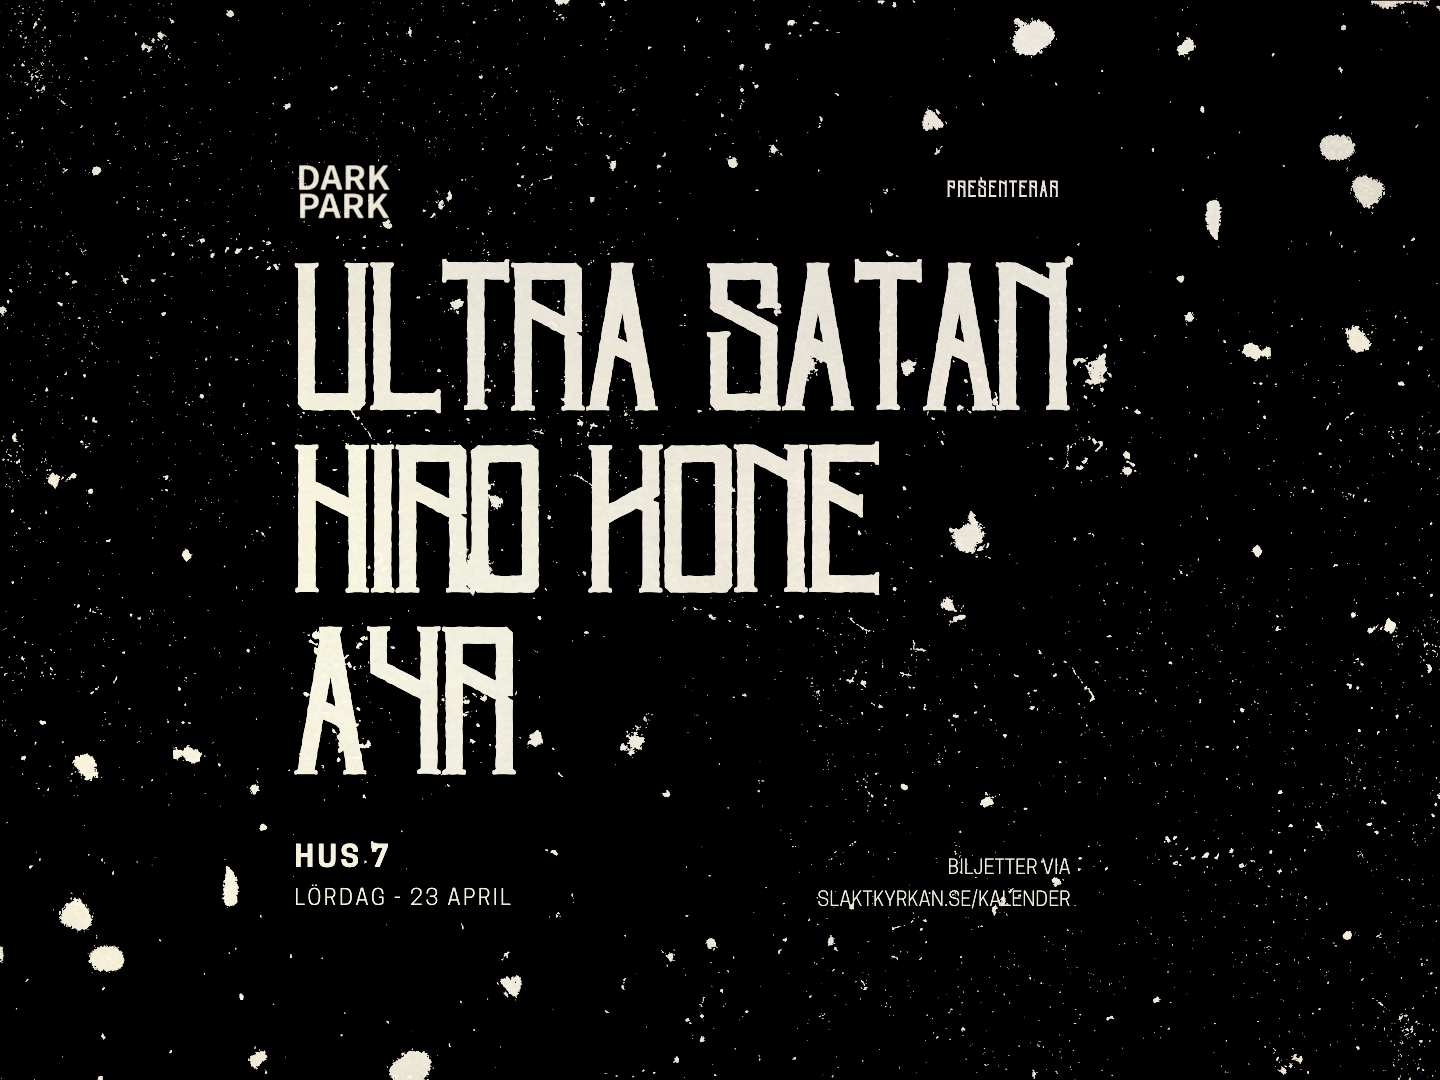 DARK PARK: Ultra Satan, Hiro Kone & A4R